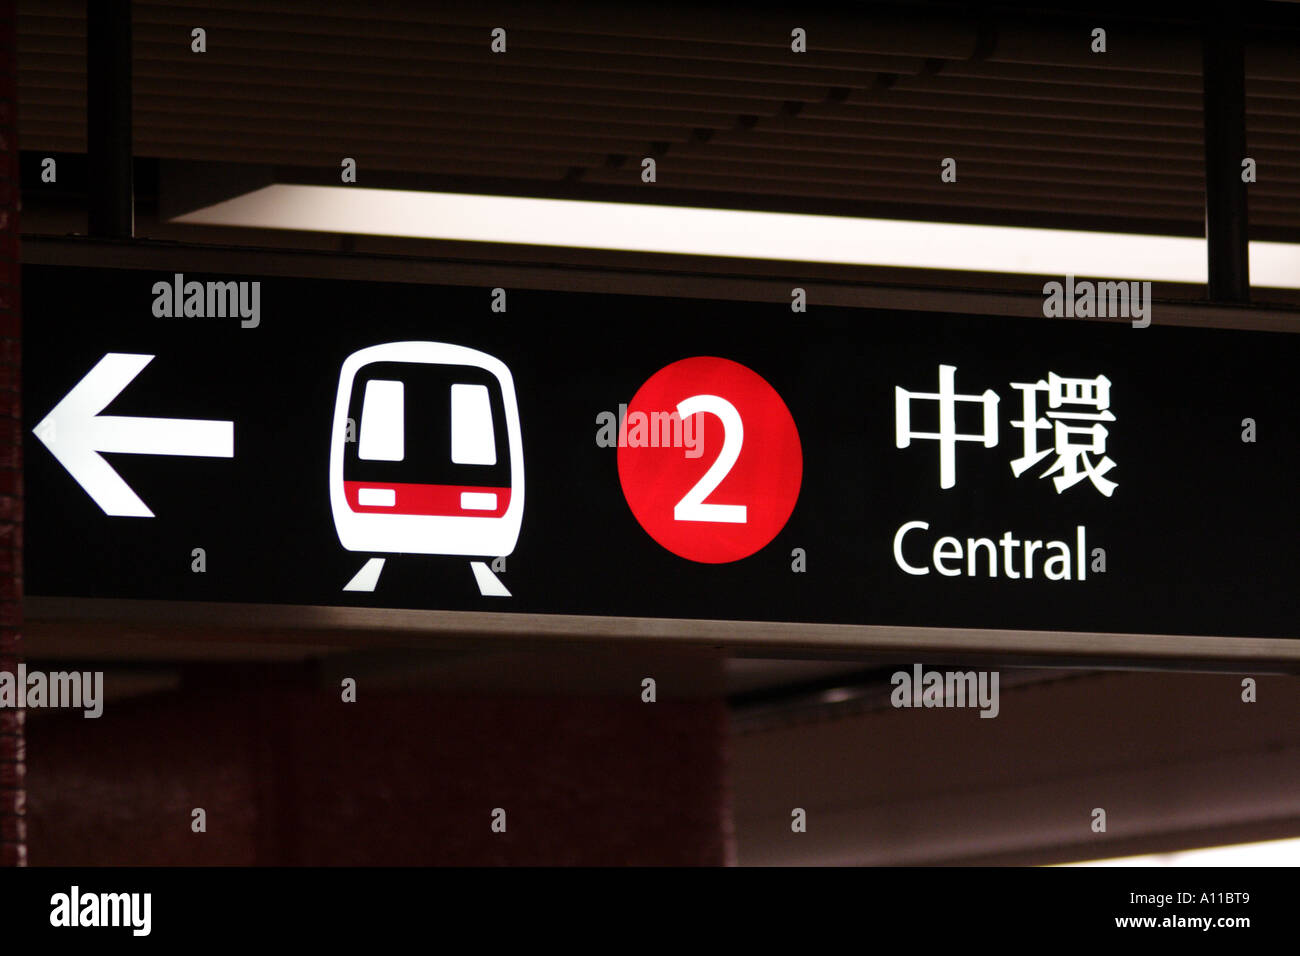 Subway sign to Central, Hong Kong SAR Stock Photo